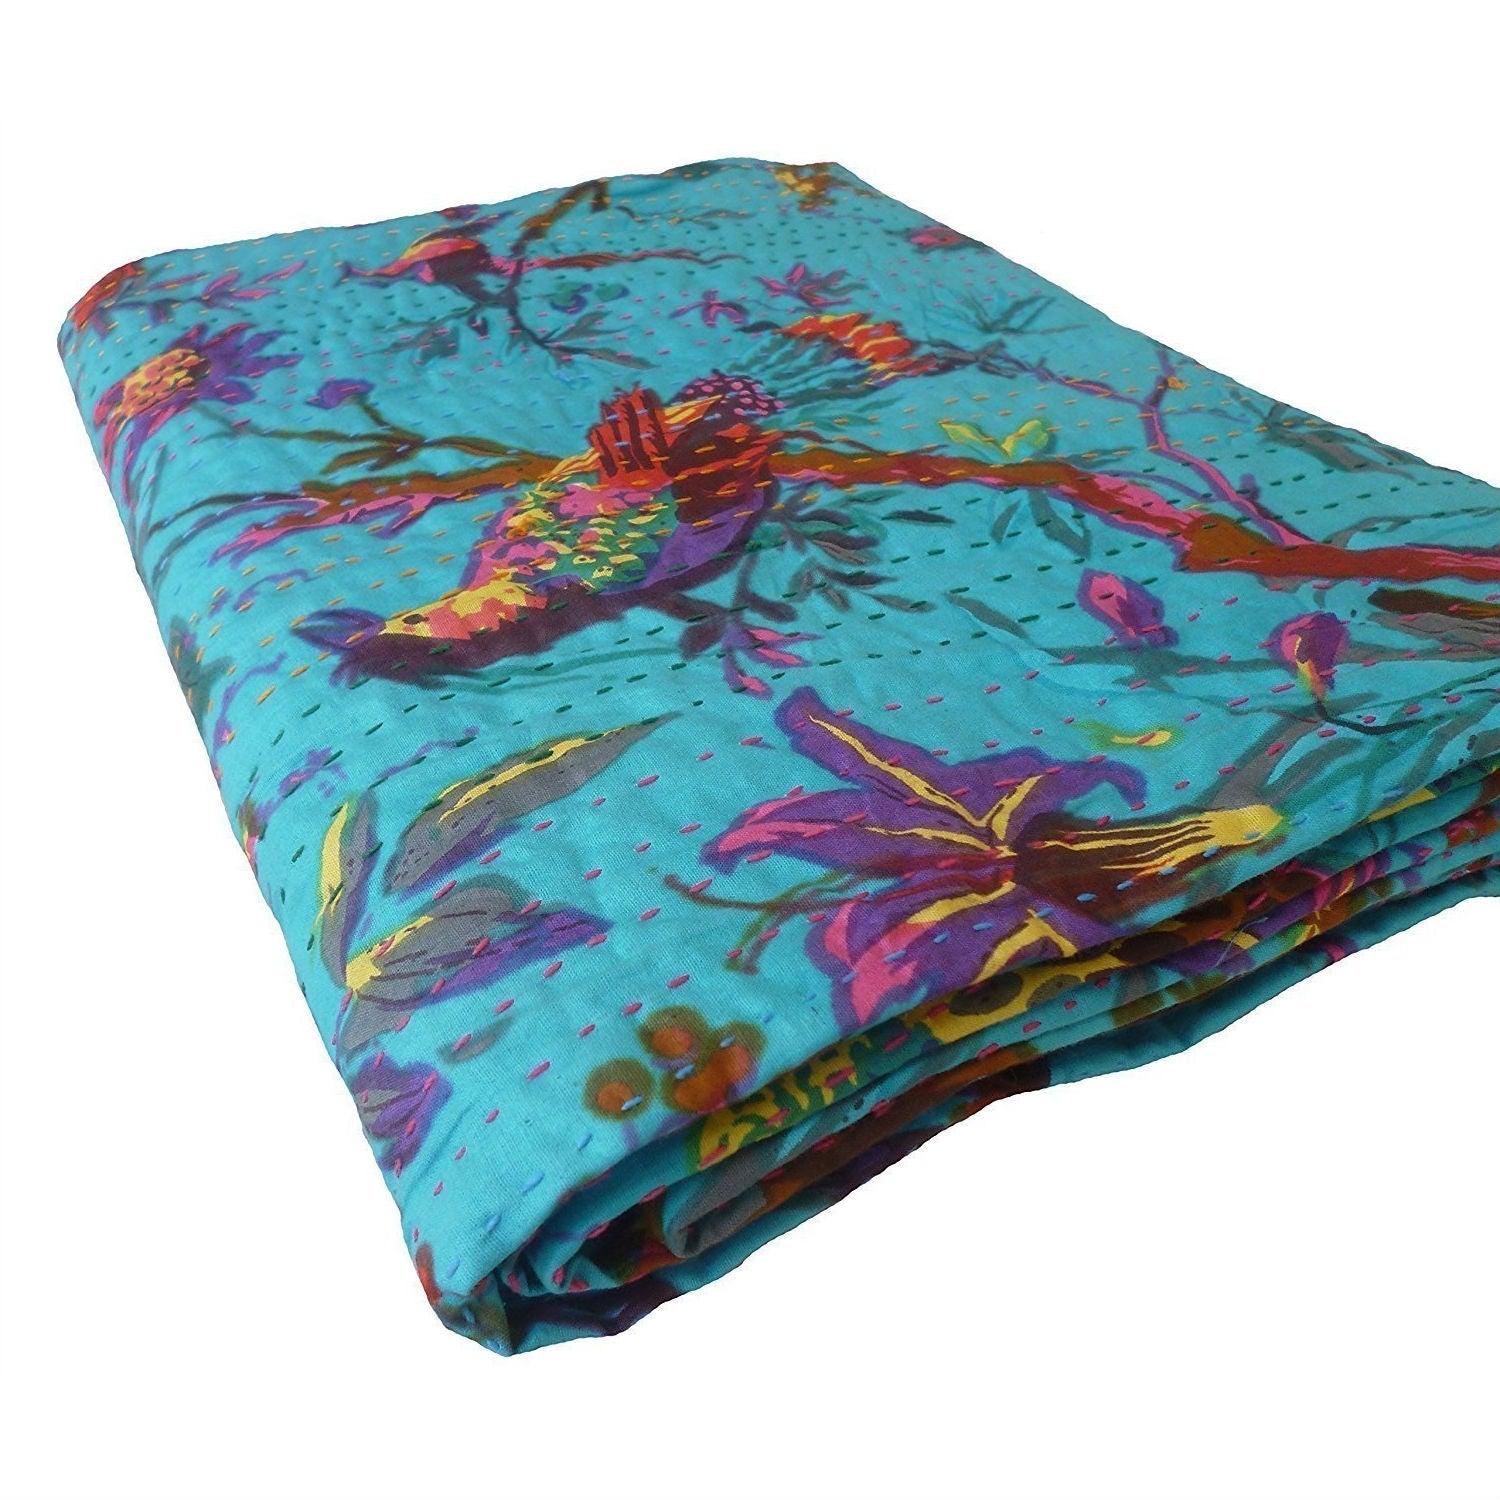 King size Blue Floral Birds Cotton Quilt Blanket Bedspread - beddingbag.com